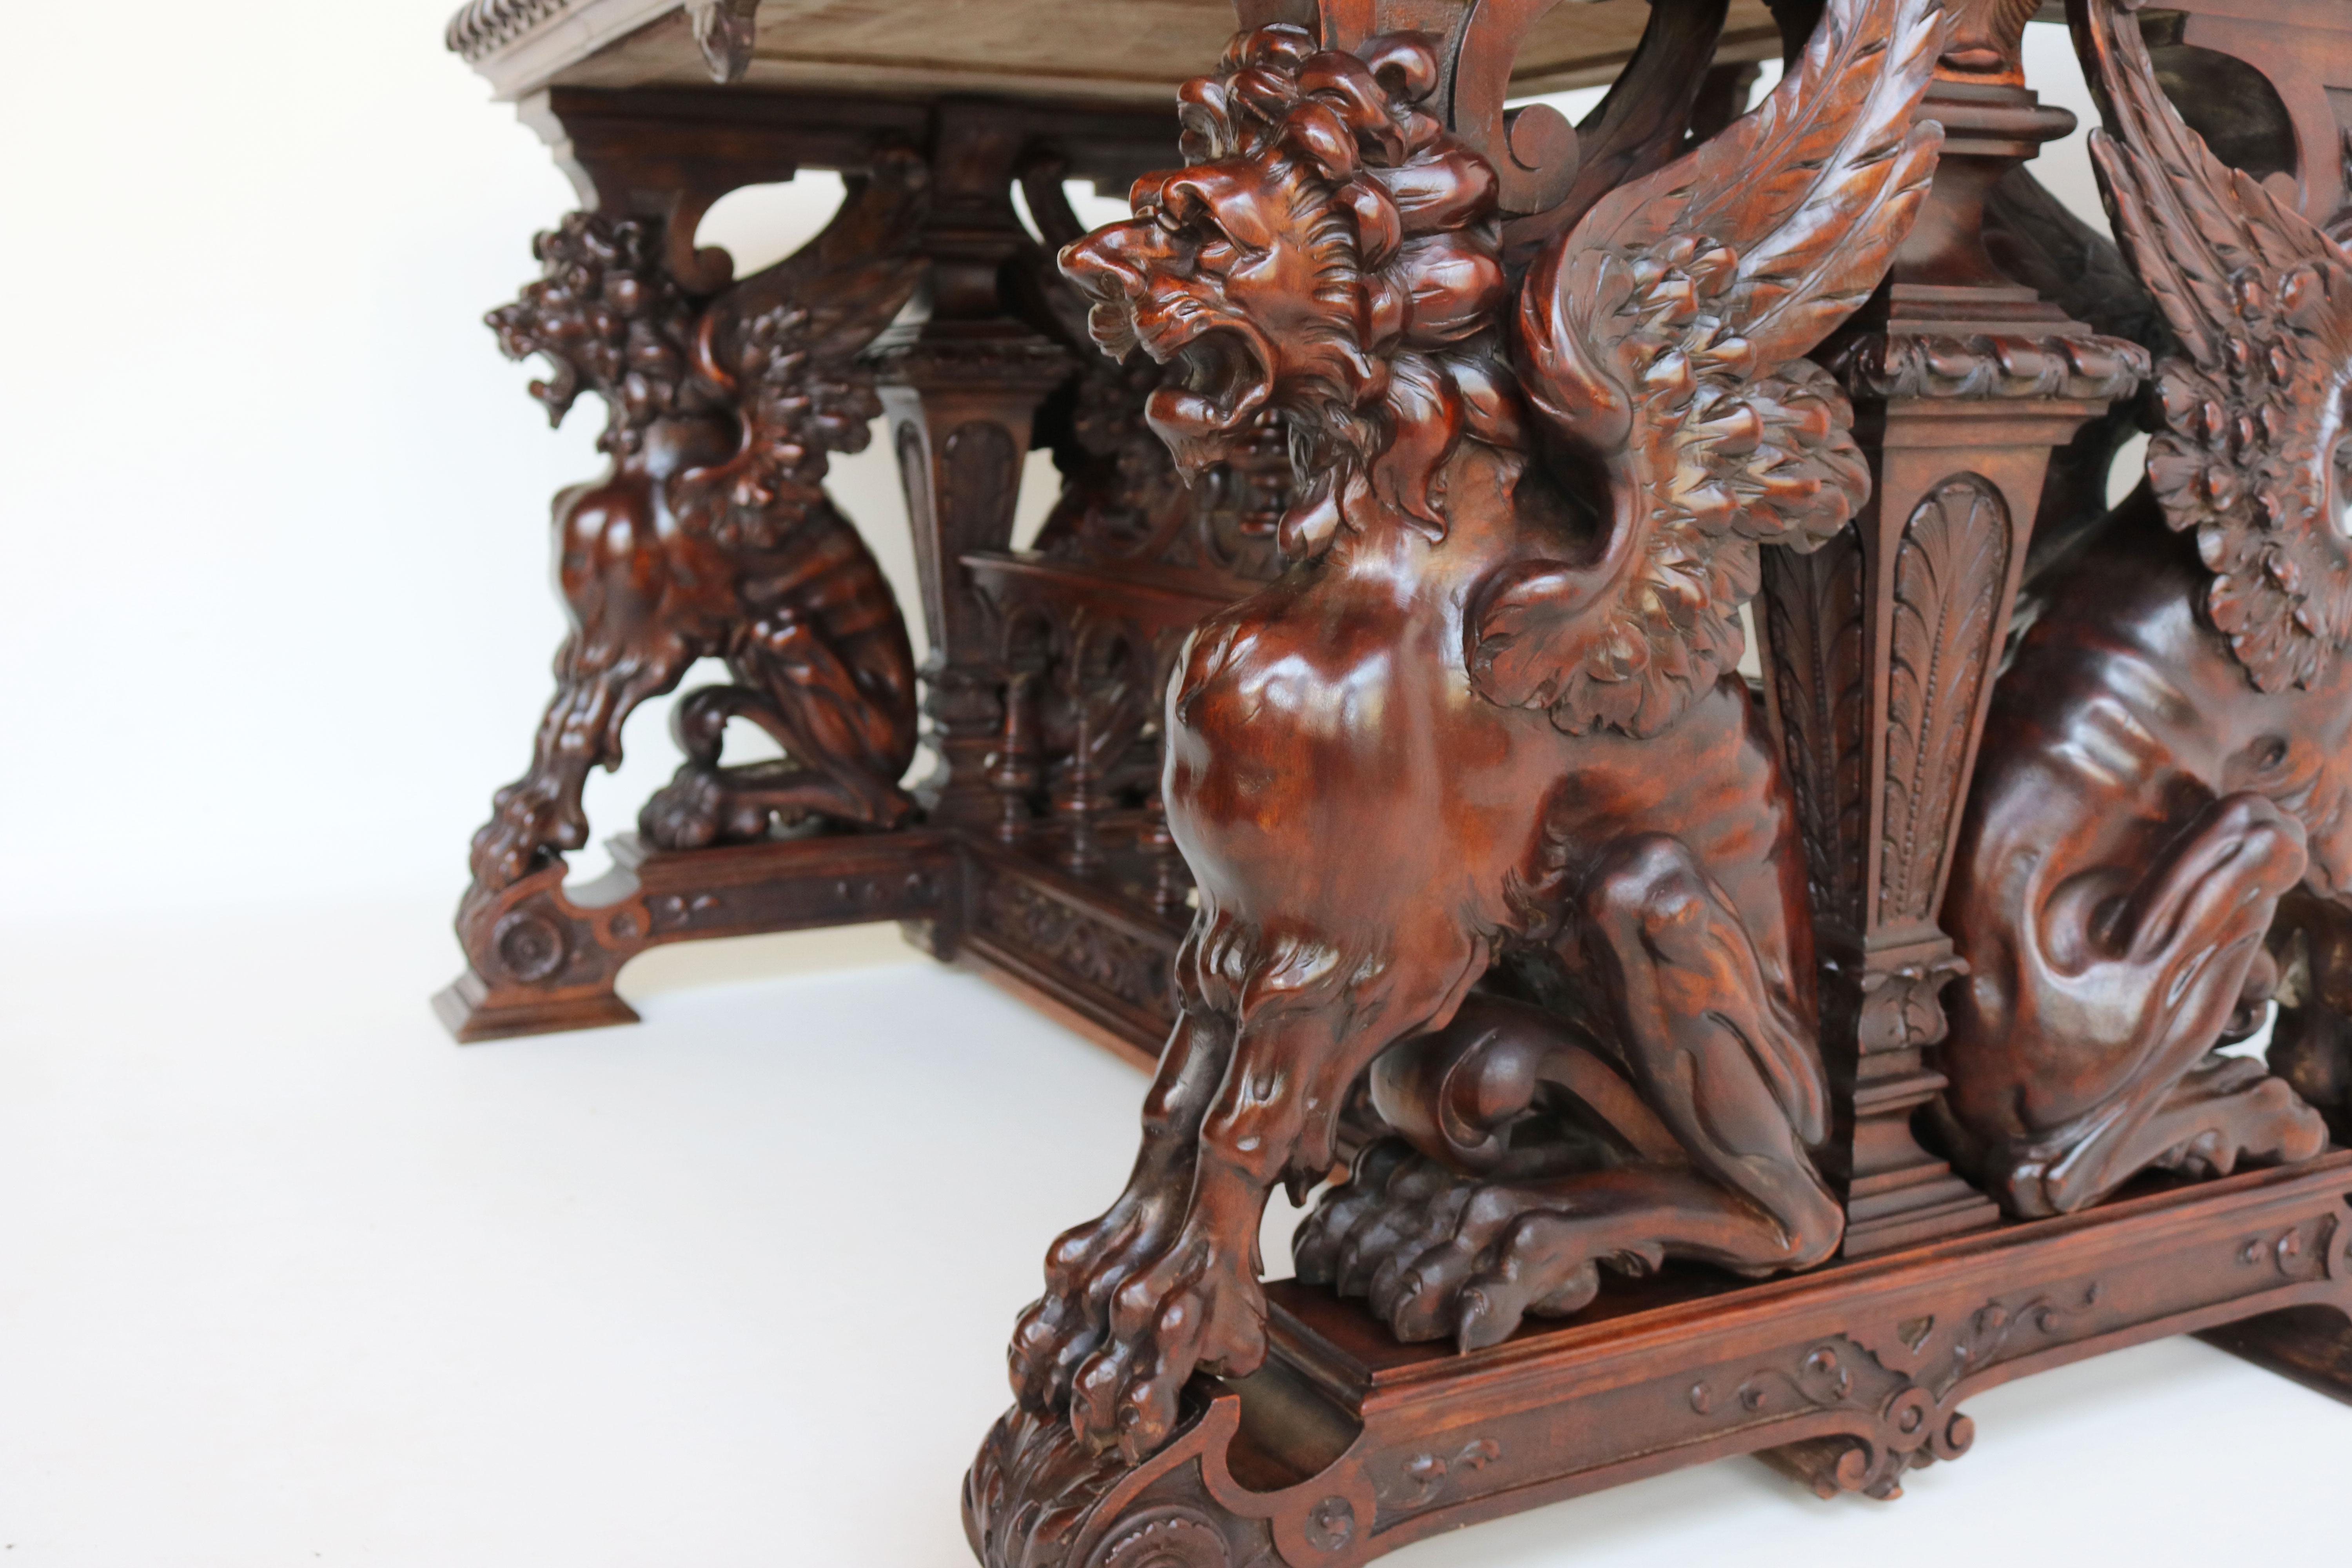 Cette exquise table à écrire / bureau Renaissance de Victor Aimone a été fabriquée en 1890 en bois de noyer massif. Il présente quatre magnifiques Gryphons qui ont été magistralement sculptés dans le bois. Ils sont complètement libres et ouverts et